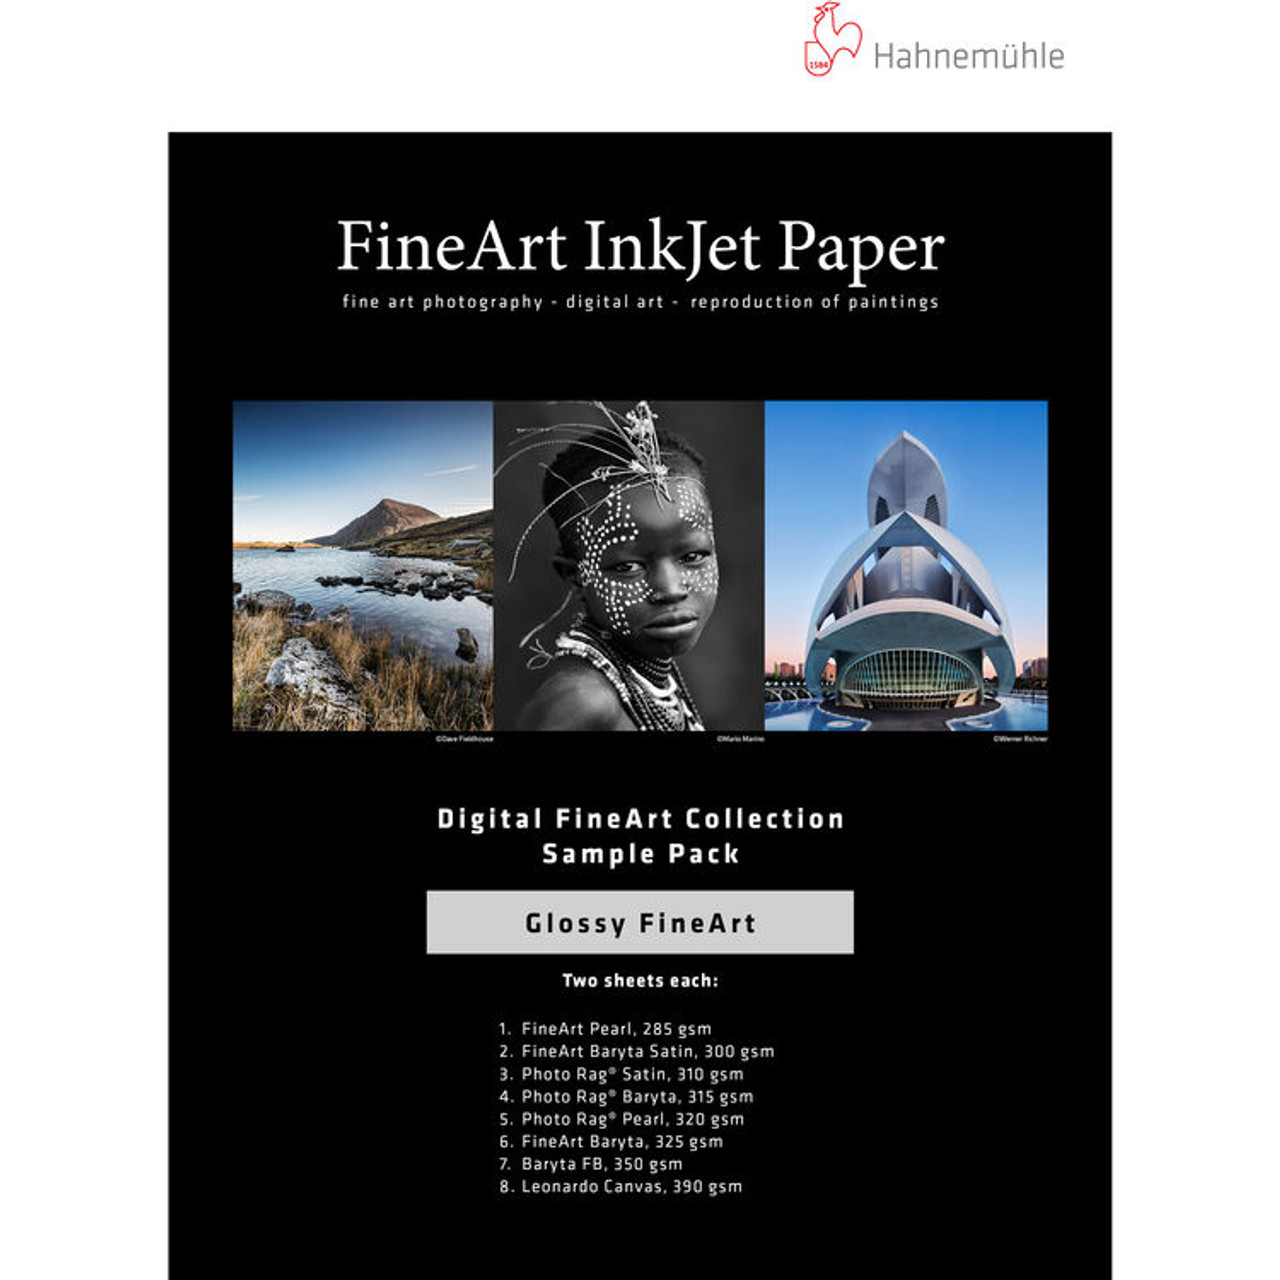 Hahnem√ºhle Glossy FineArt Inkjet Paper Sample Pack (13 x 19", 14 Sheets)